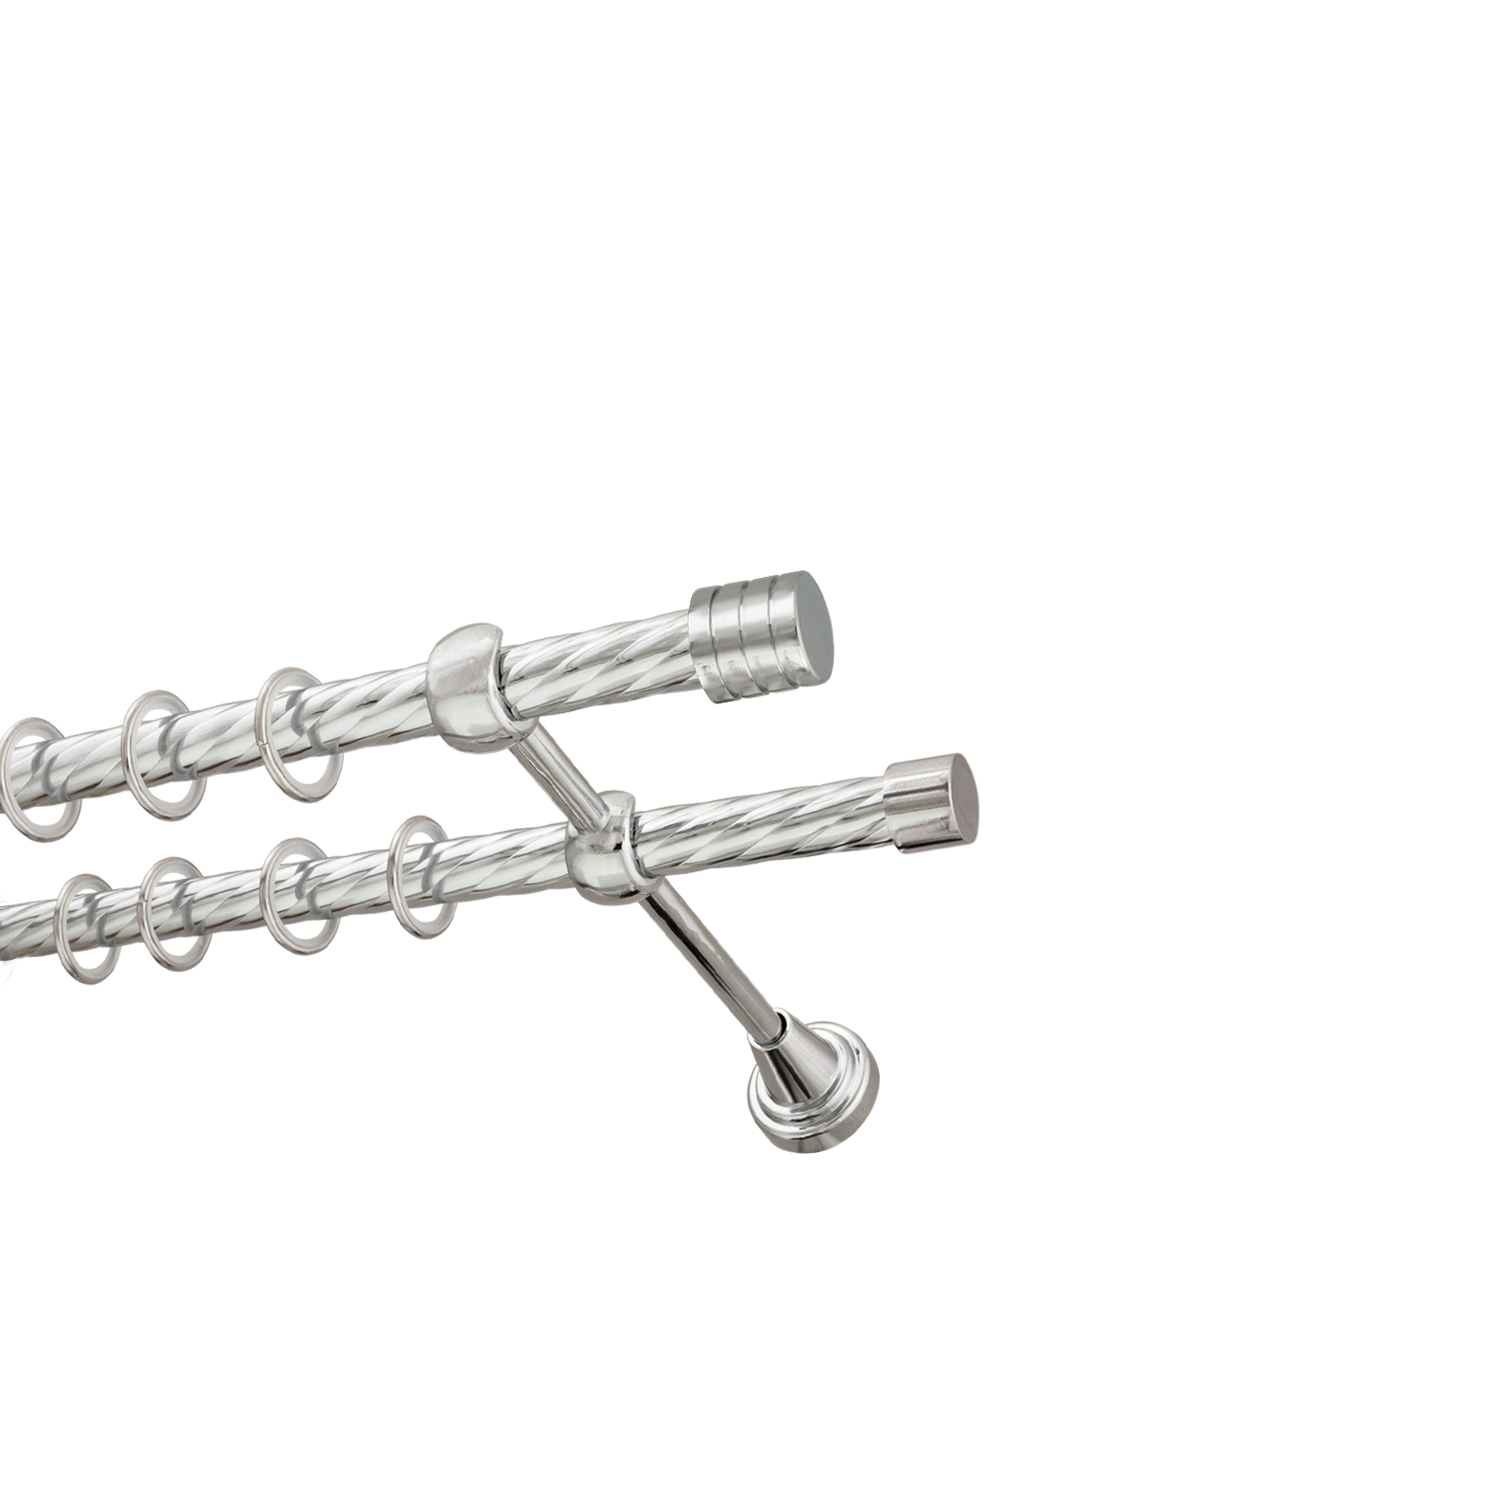 Металлический карниз для штор Подиум, двухрядный 16/16 мм, серебро, витая штанга, длина 300 см - фото Wikidecor.ru